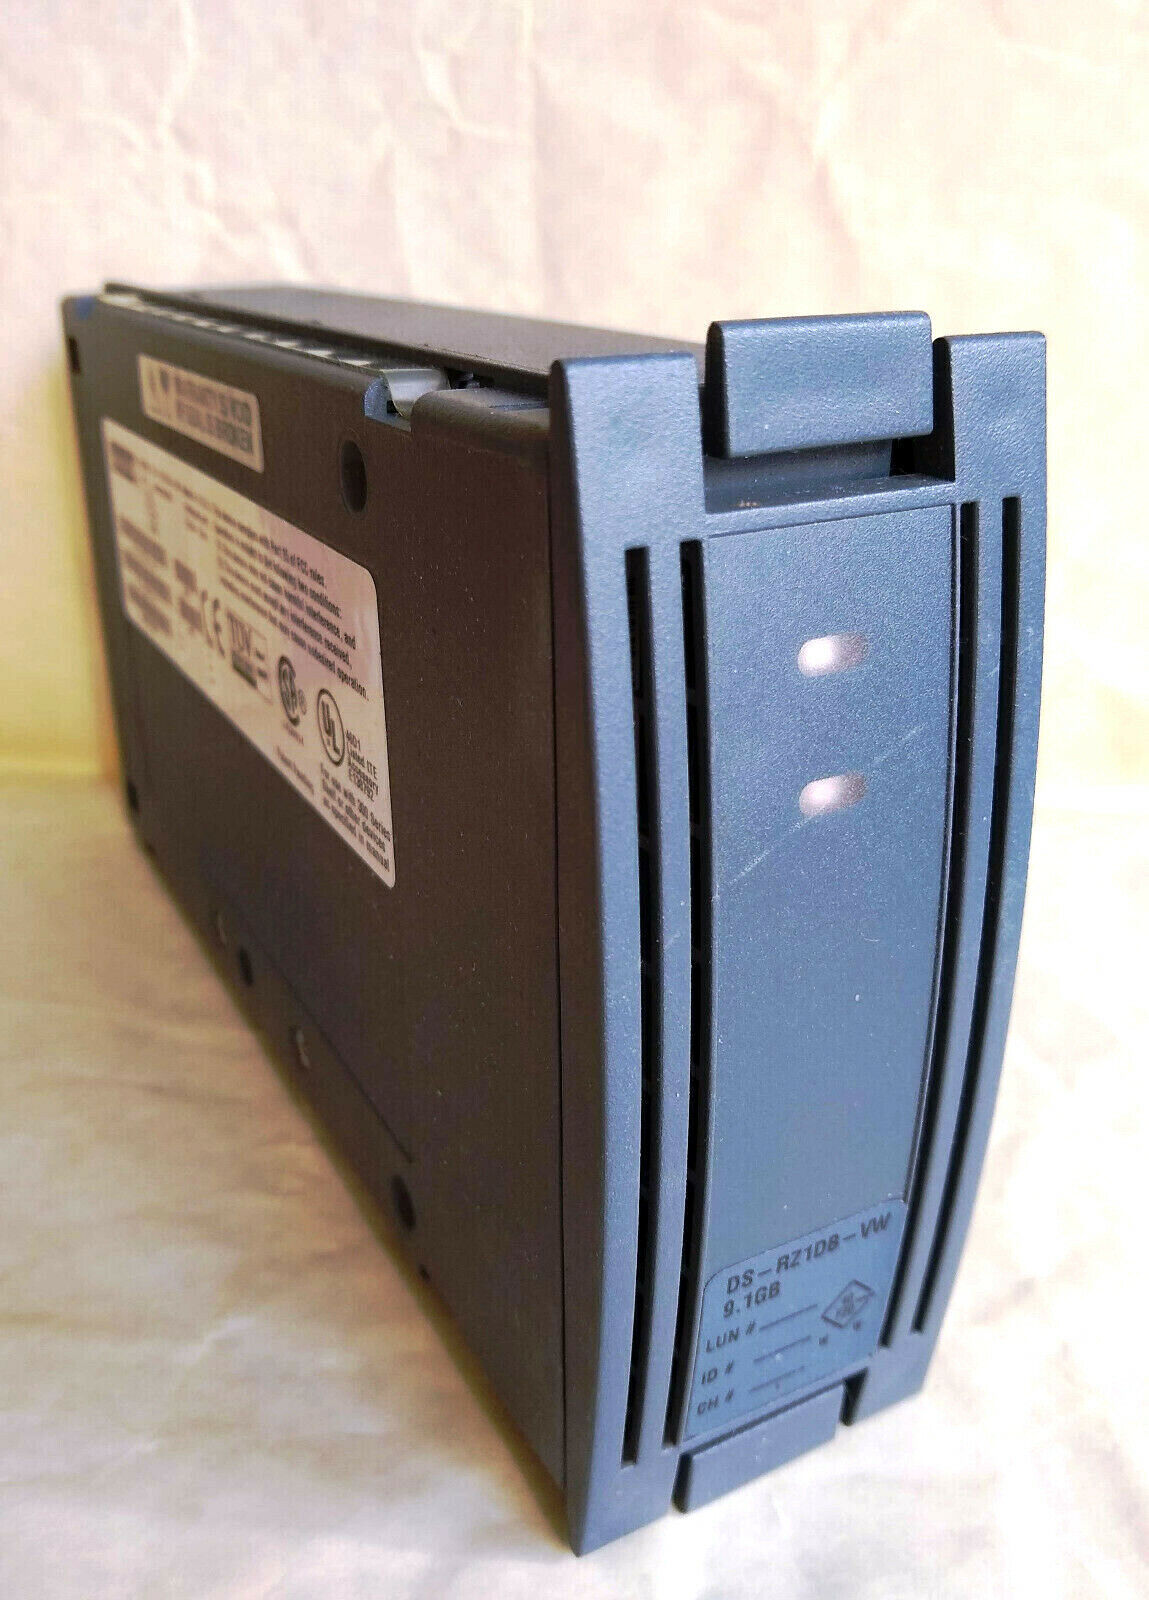 DEC Compaq DS-RZ1DB-VW 9.1 GB HDD Wide SCSI Alpha Server Internal Hard Drive